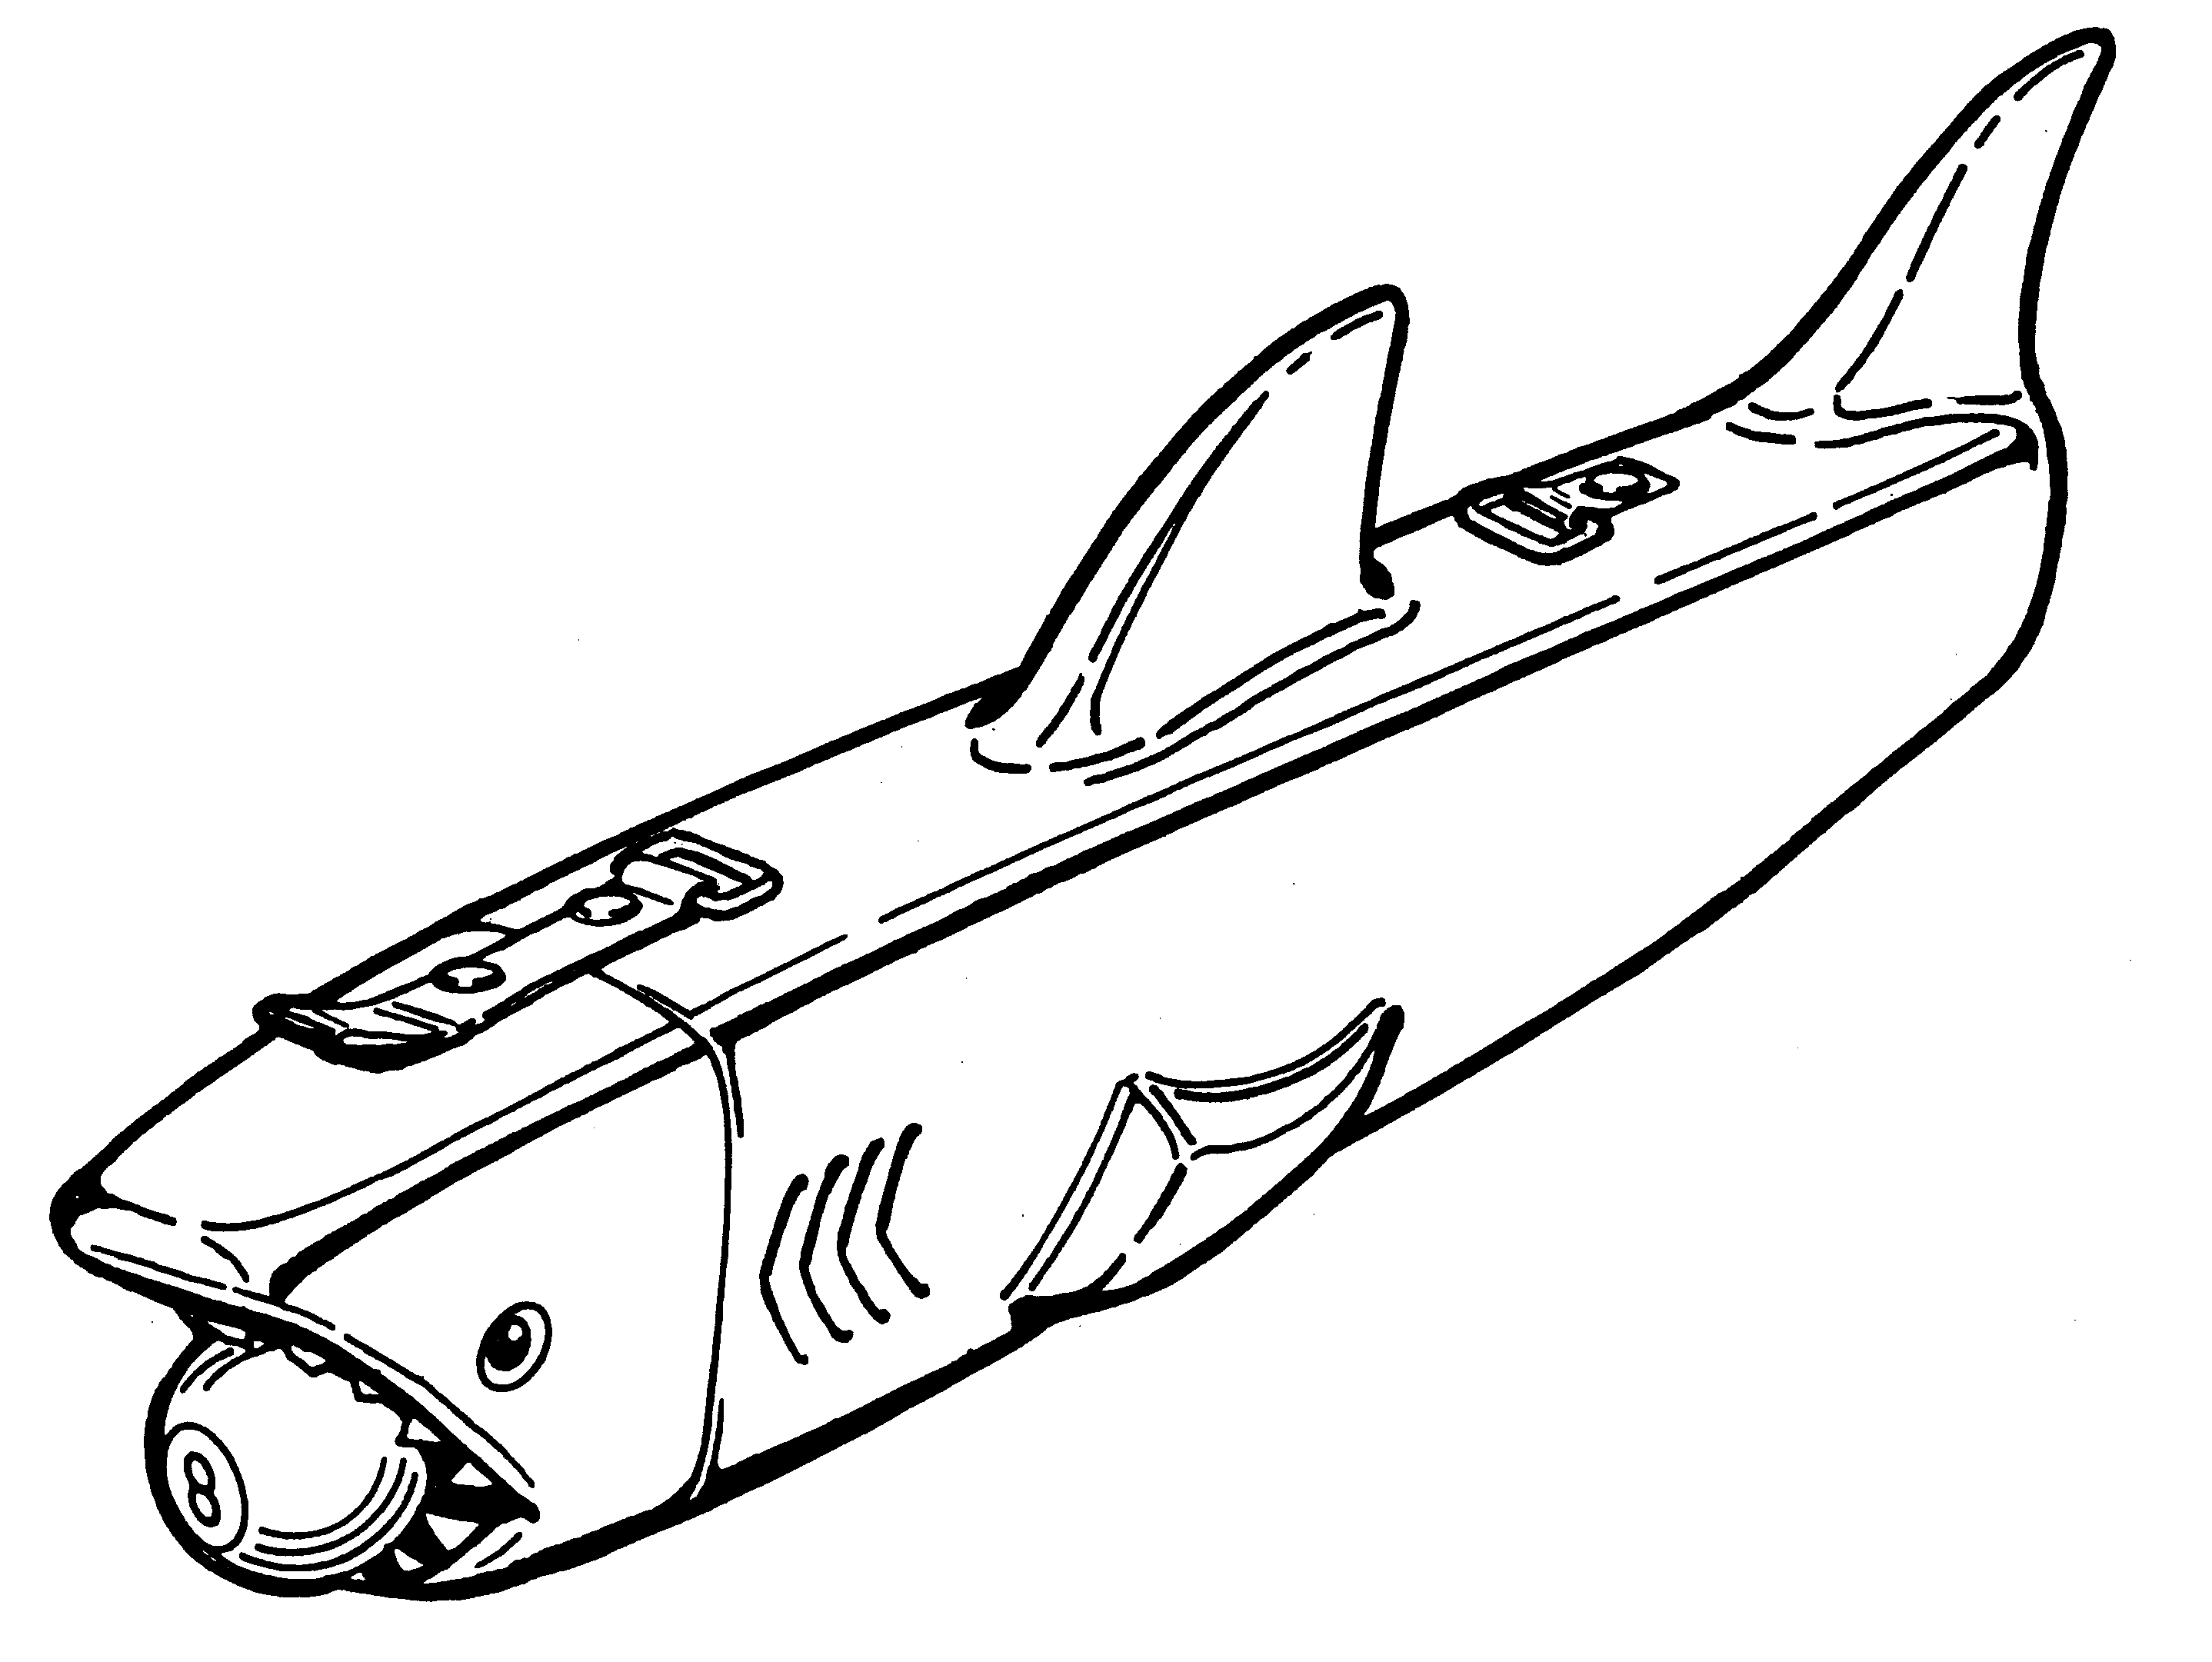 Shark shaped container - Larsen, Malvin Leslie